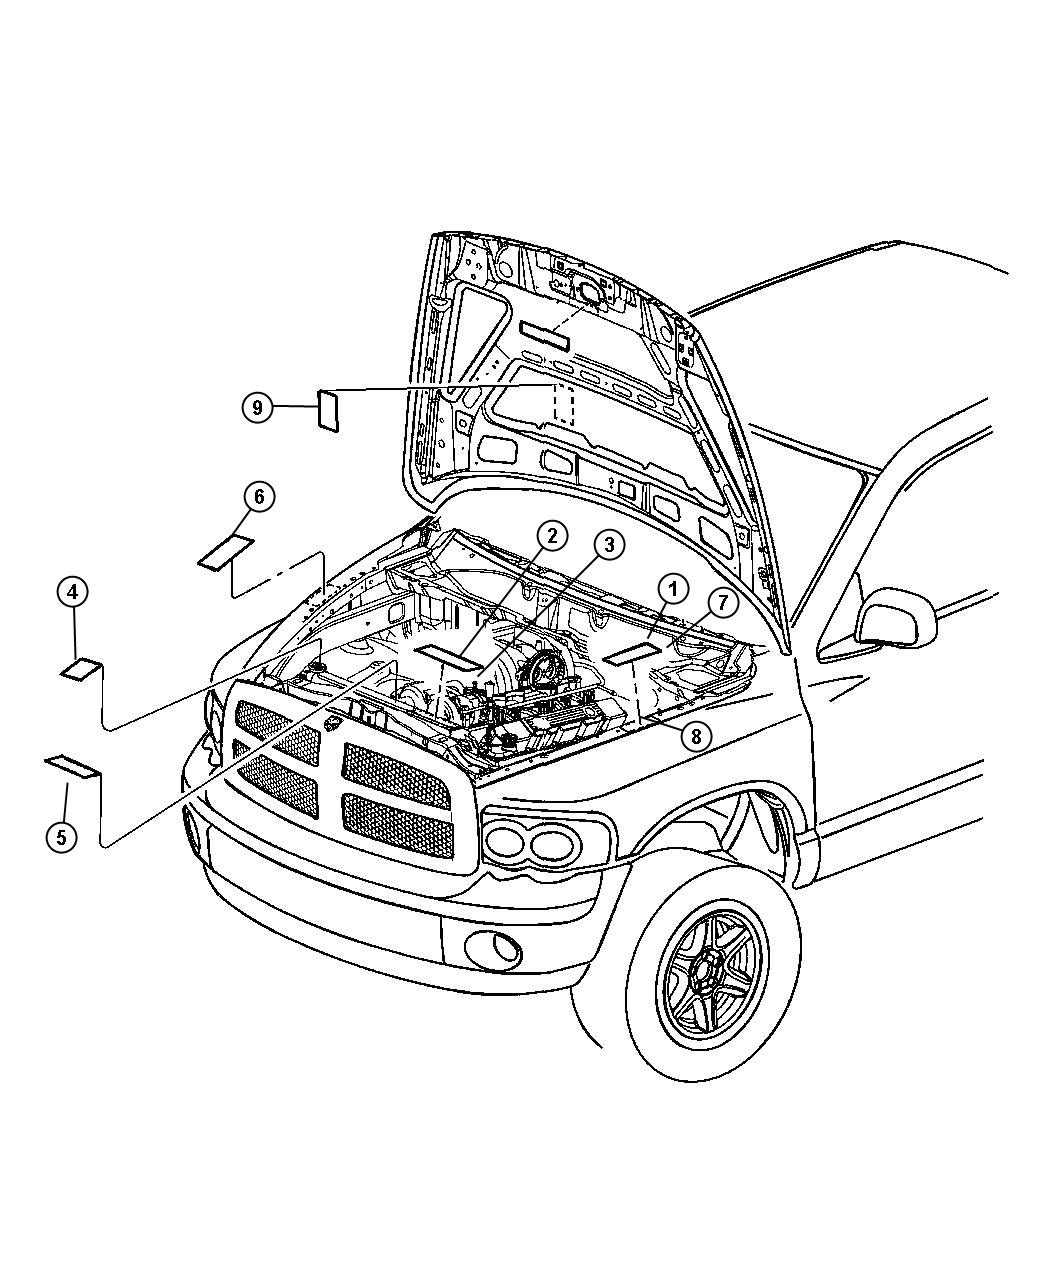 Dodge ram air conditioning diagram